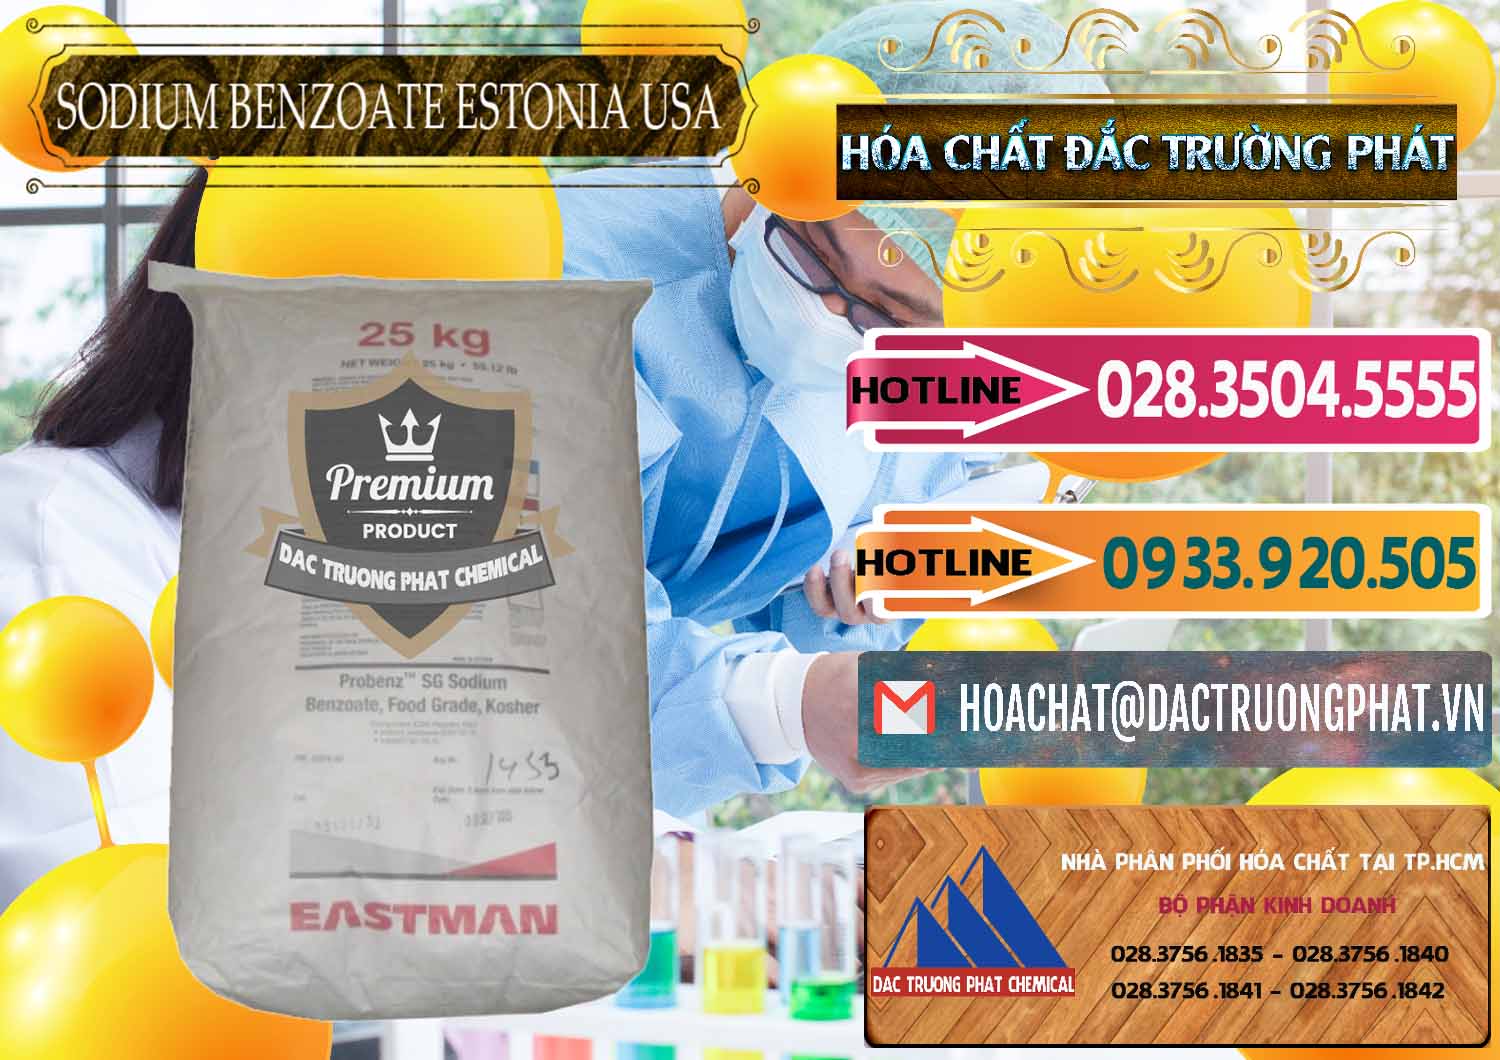 Công ty bán & phân phối Sodium Benzoate - Mốc Bột Estonia Mỹ USA - 0468 - Chuyên cung ứng ( phân phối ) hóa chất tại TP.HCM - dactruongphat.vn